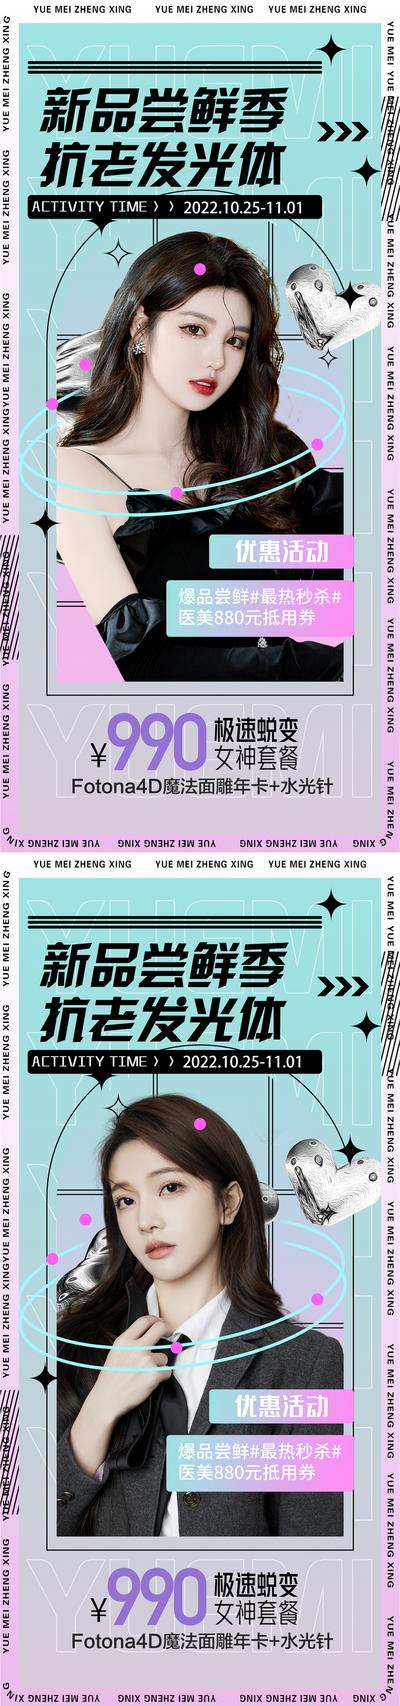 南门网 海报 医美 活动 促销 周年庆 美容 卡项 优惠 简约 模特